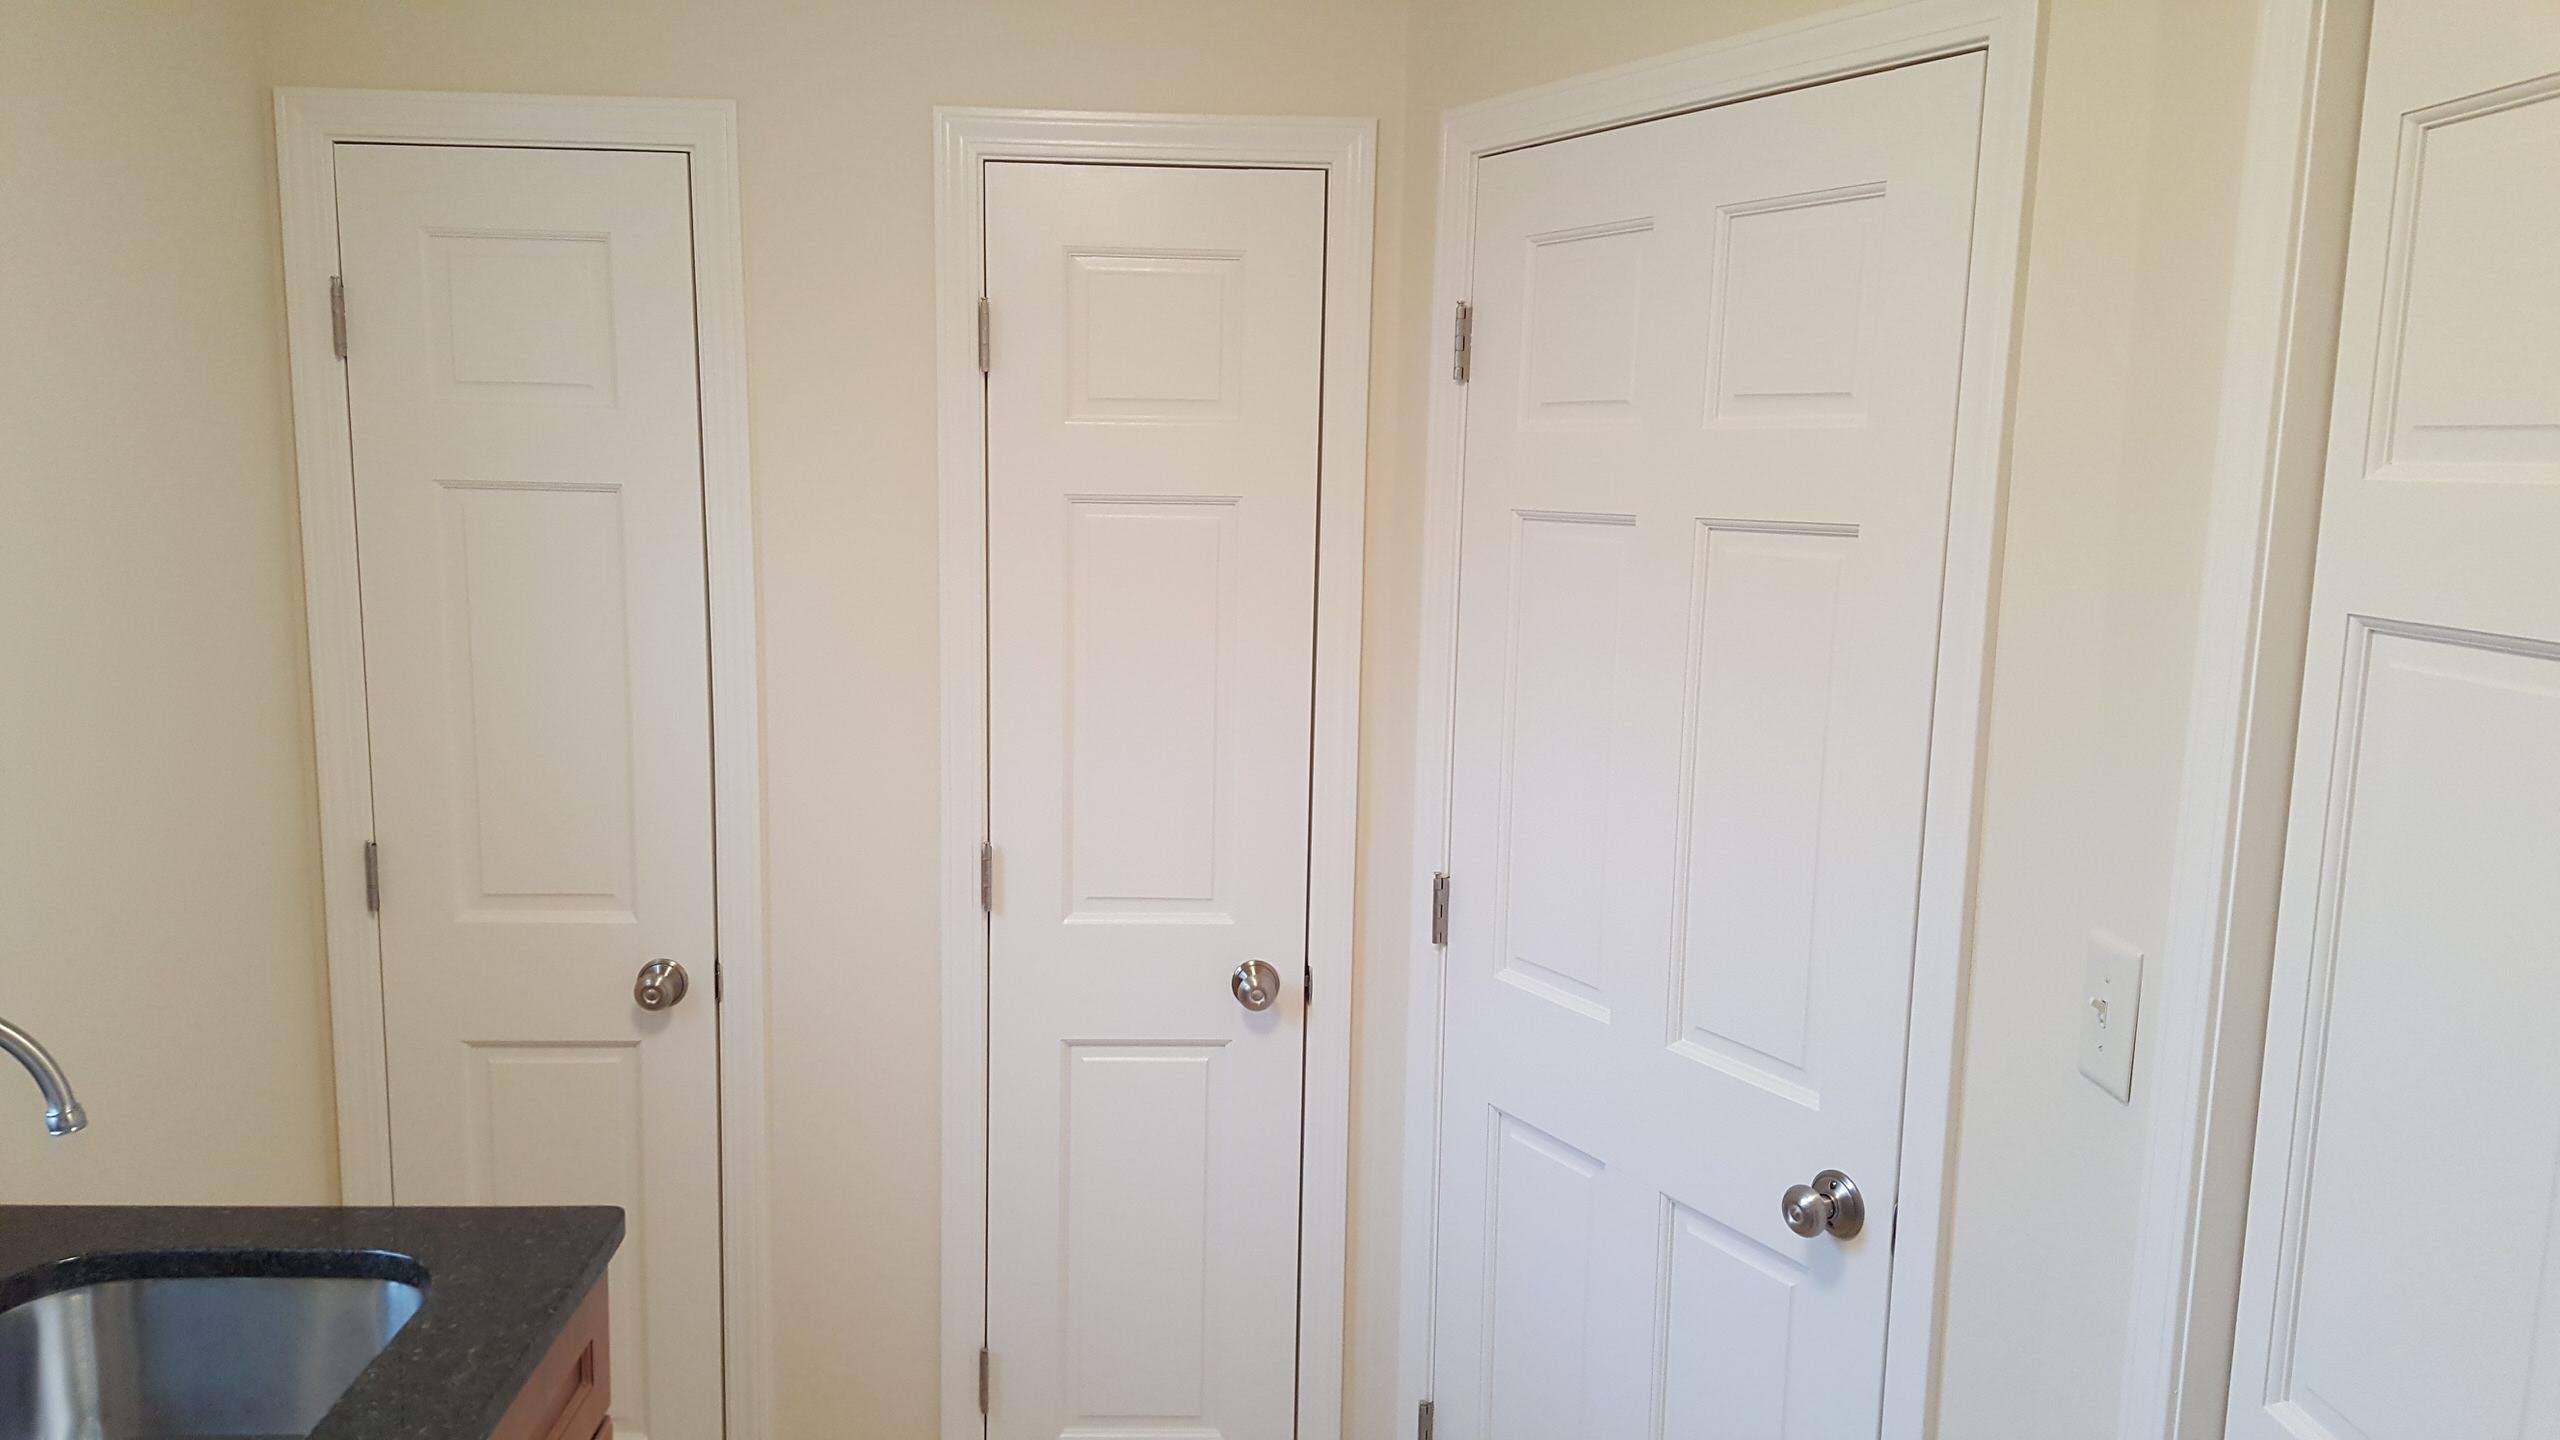 Laundry room...left door=broom closet, center=linen closet rear door, right=hall